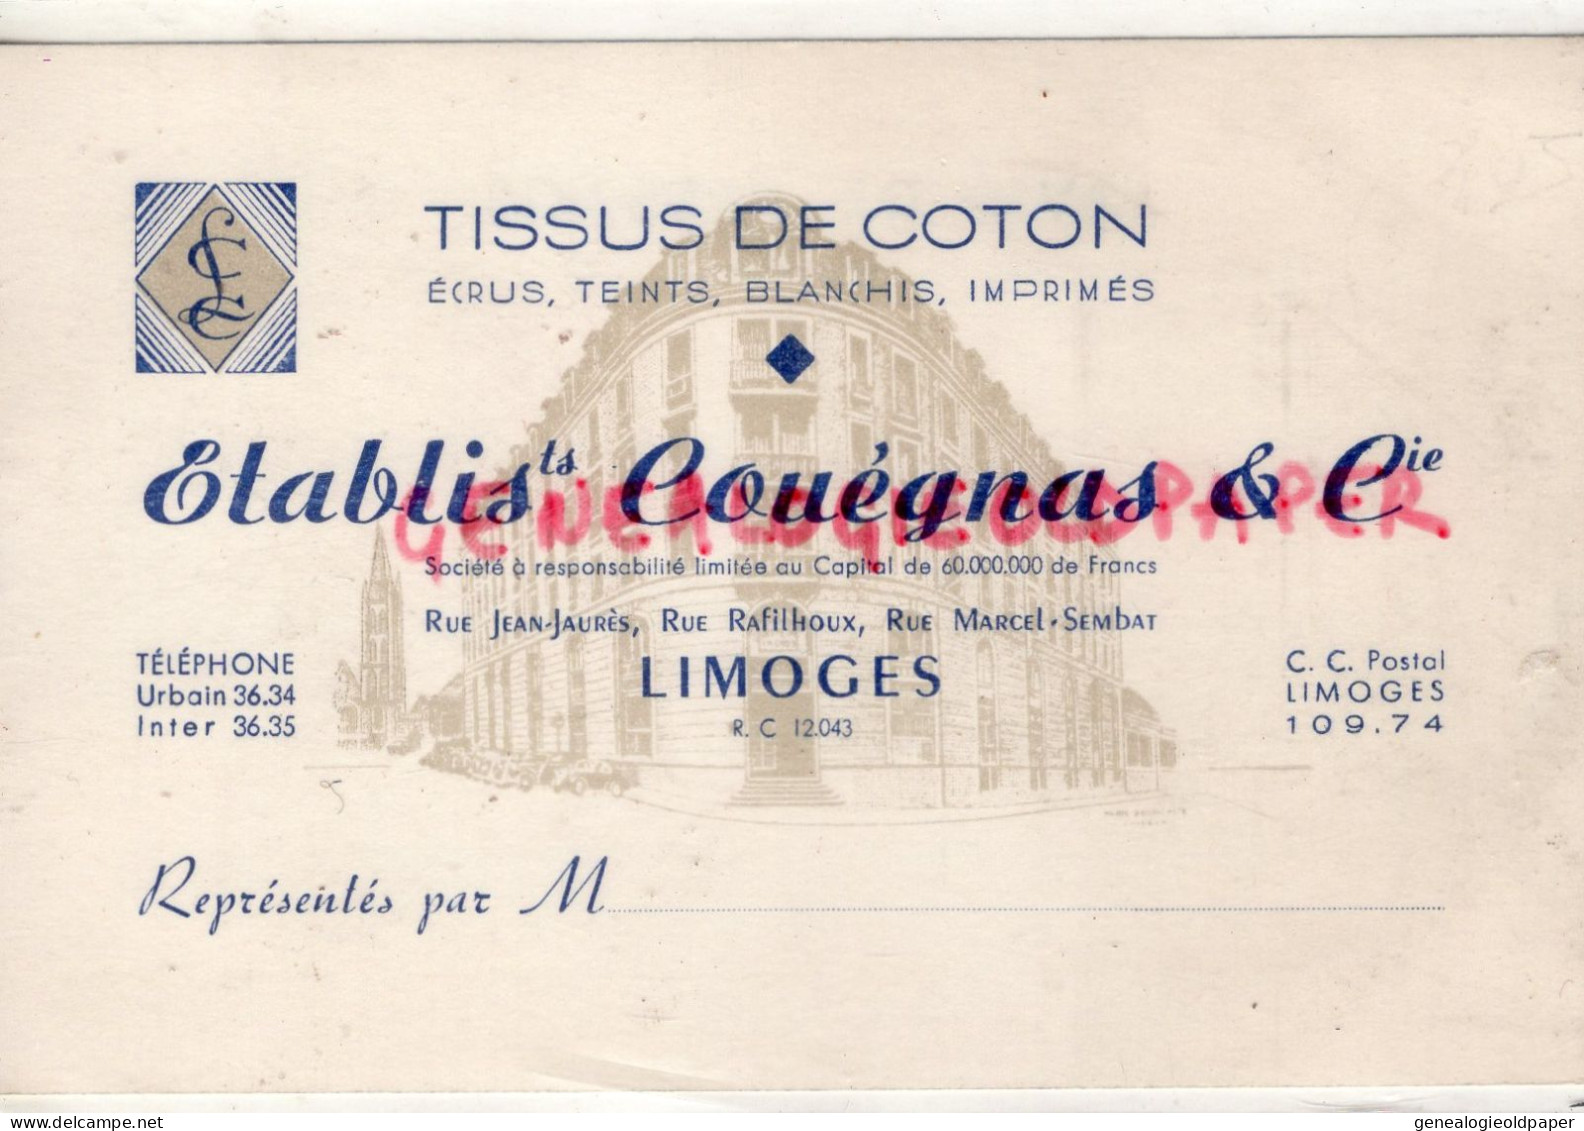 87-LIMOGES-MAGASIN VETEMENTS TISSUS COTON- COUEGNAS-RUE JEAN JAURES-RAFILHOUX-MARCEL SEMBLAT-CARTE PRECUSEUR - Textile & Vestimentaire